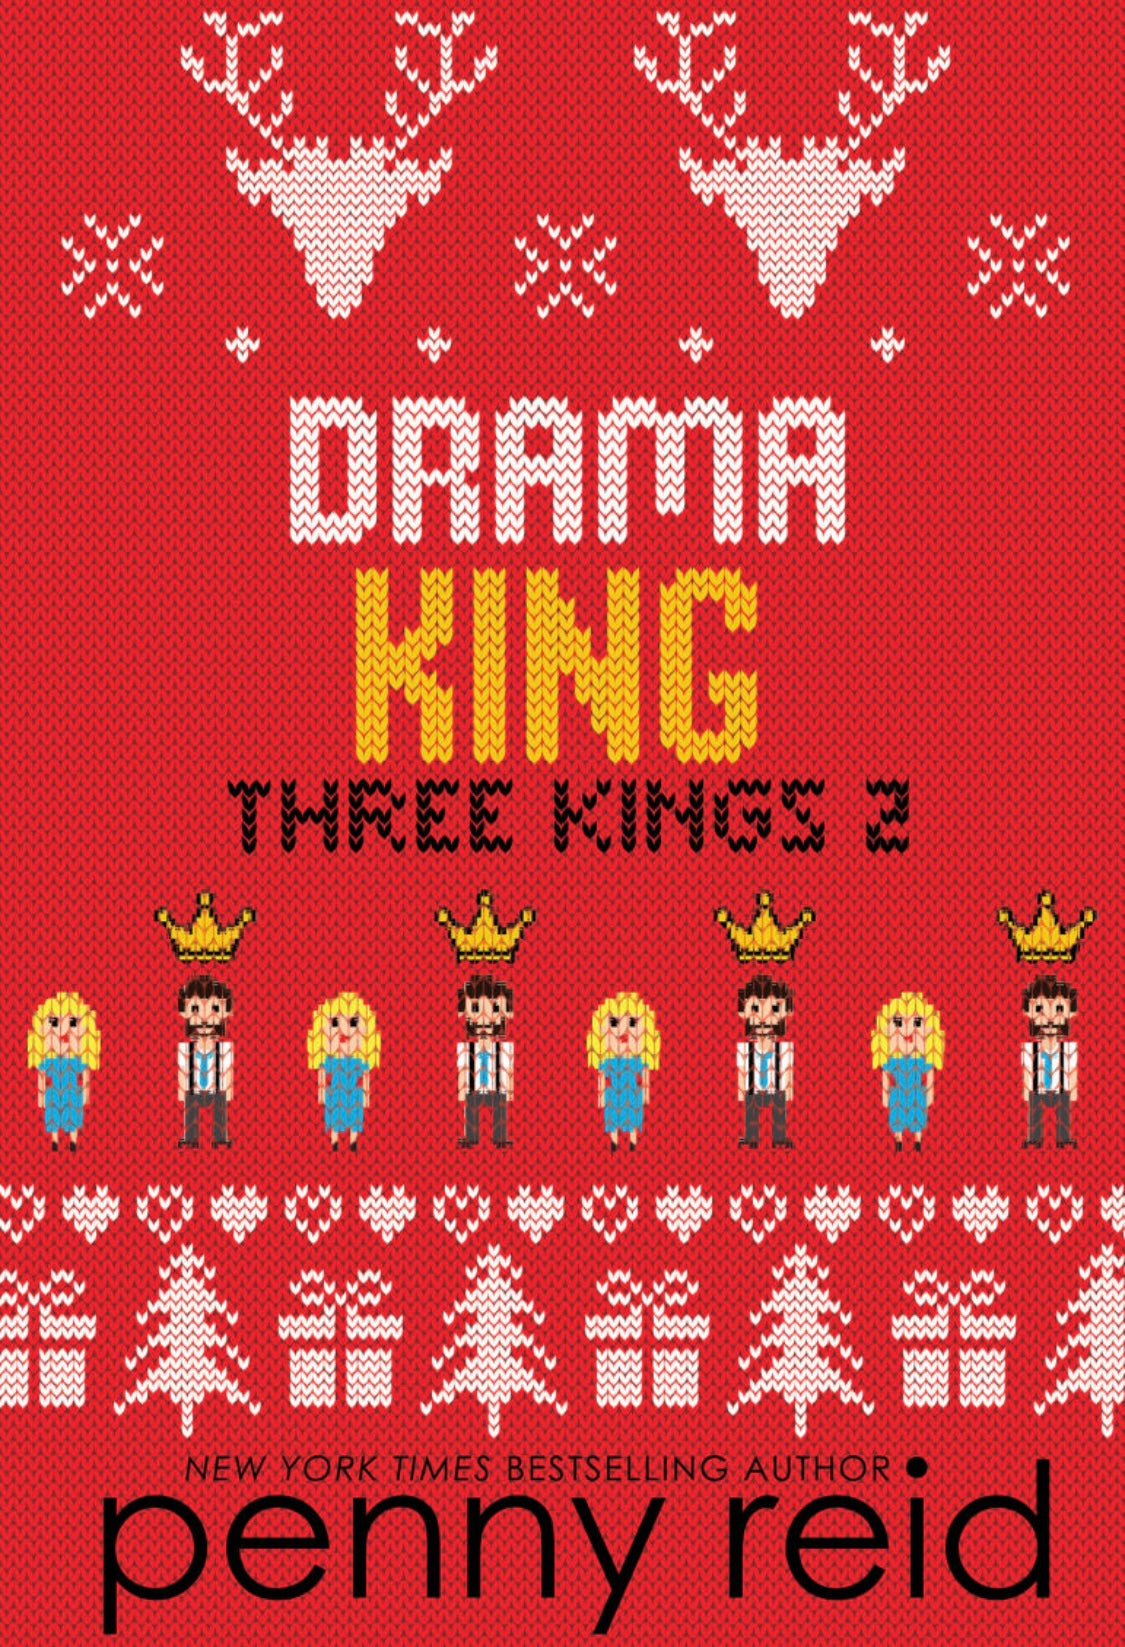 Three Kings Series by Penny Reid